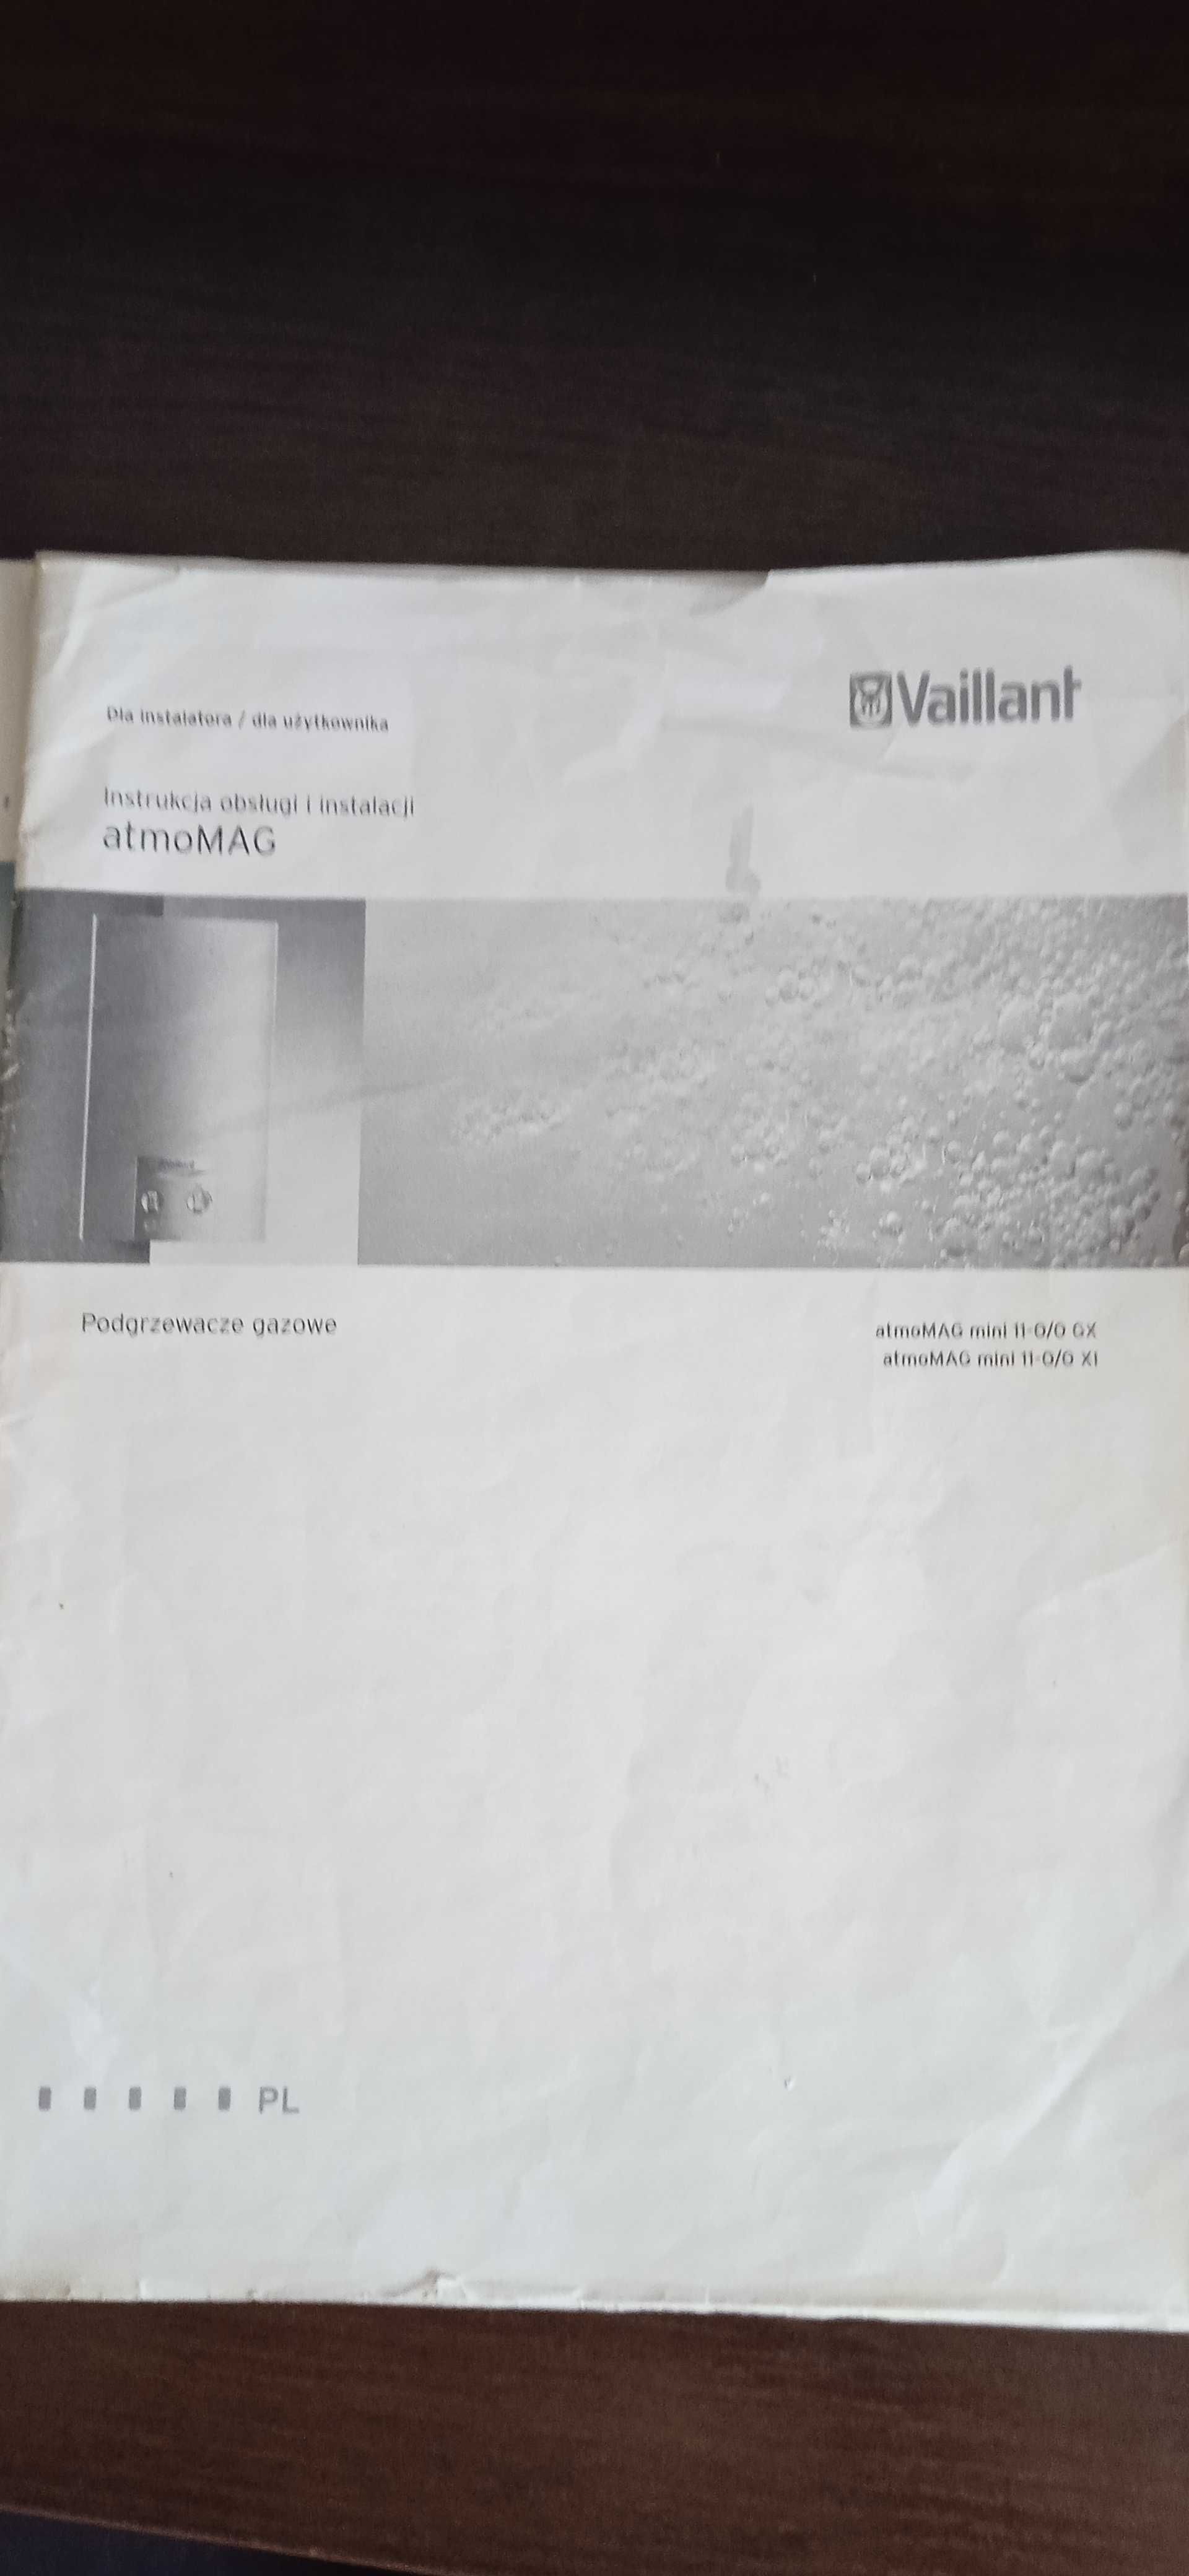 Gazowy podgrzewacz wody Vaillant typ atmomag mini PL 11-0/0 GX H